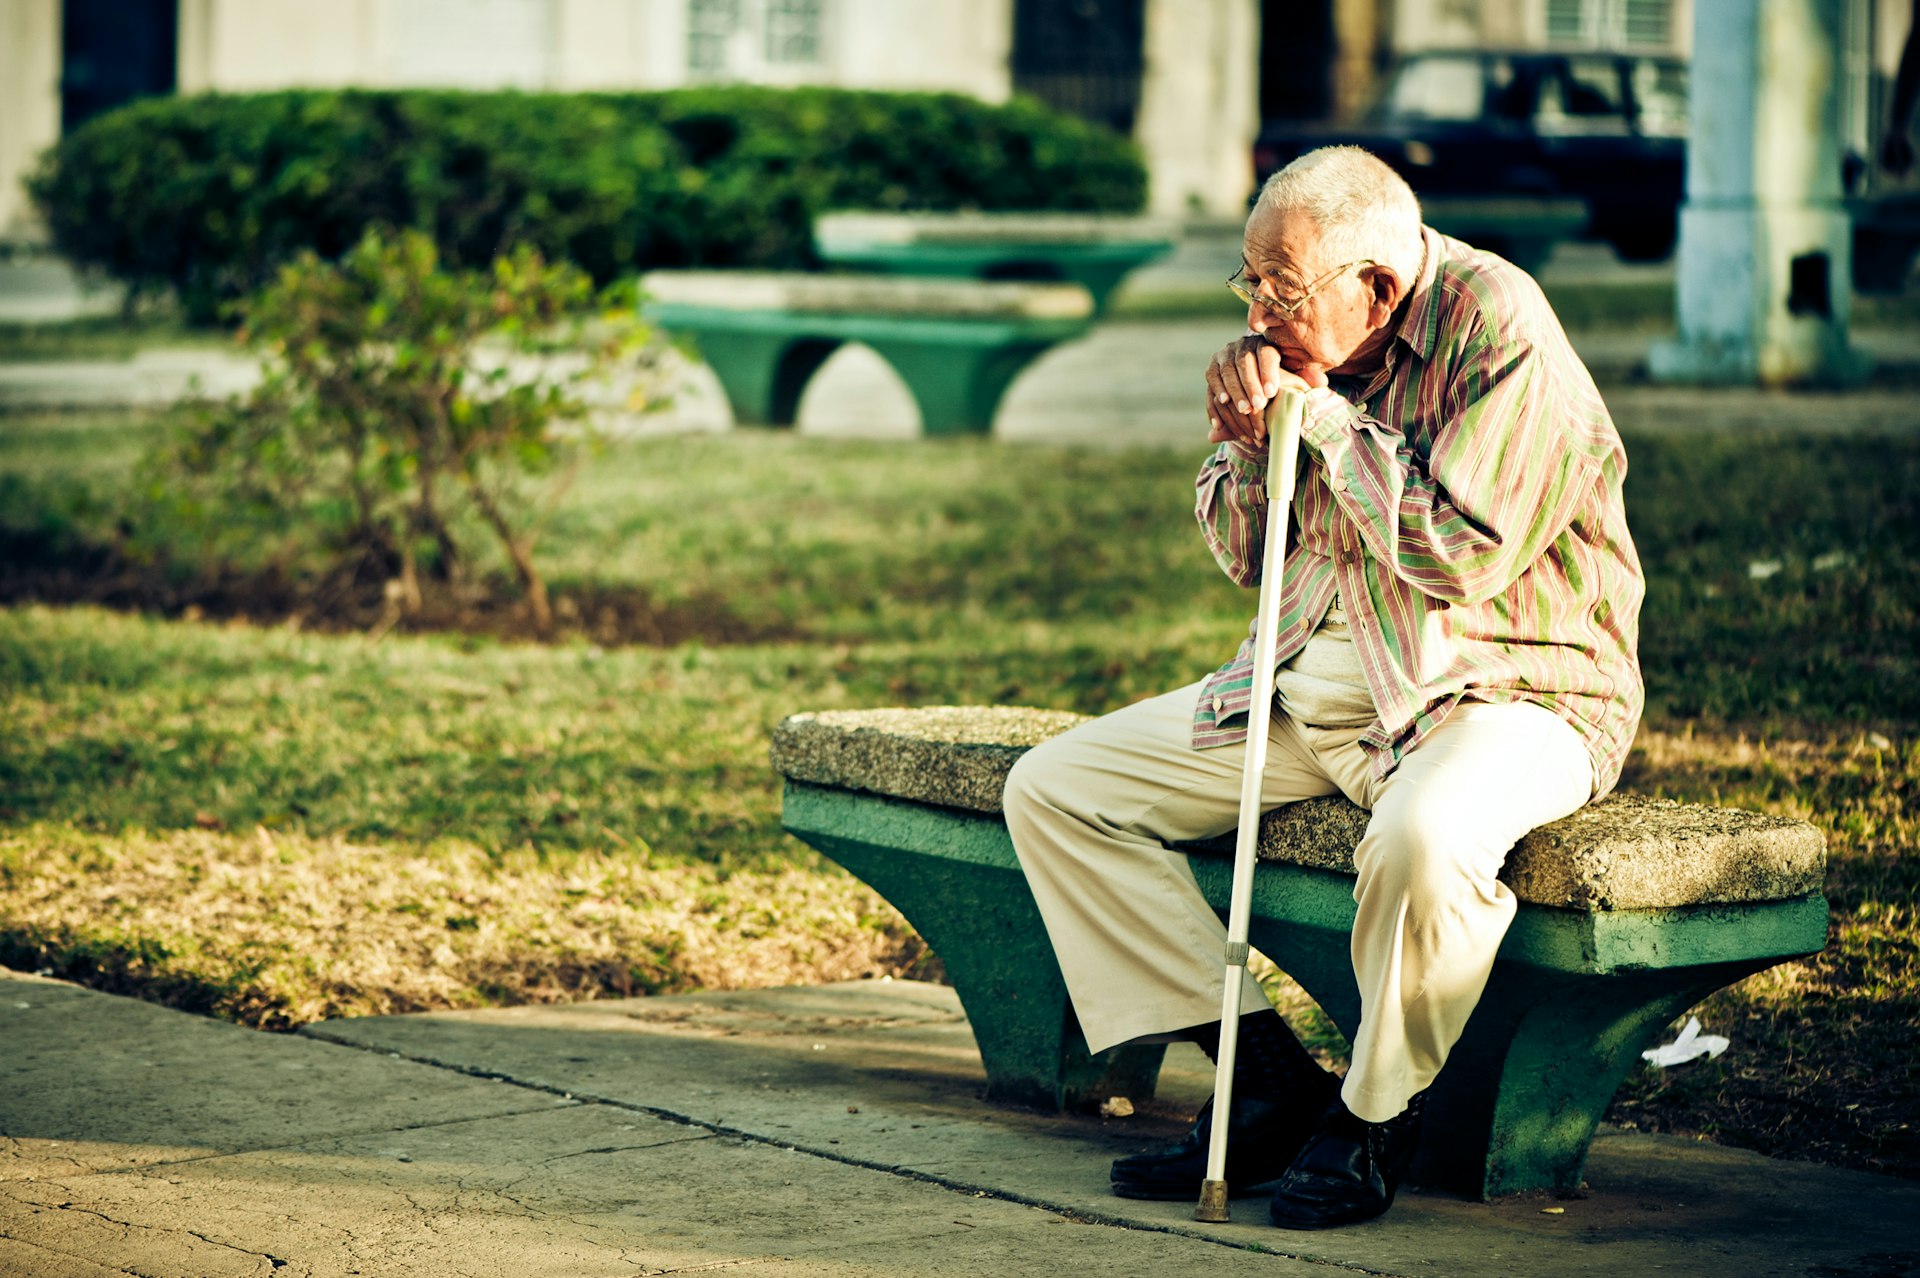 An elderly man in a park in Havana